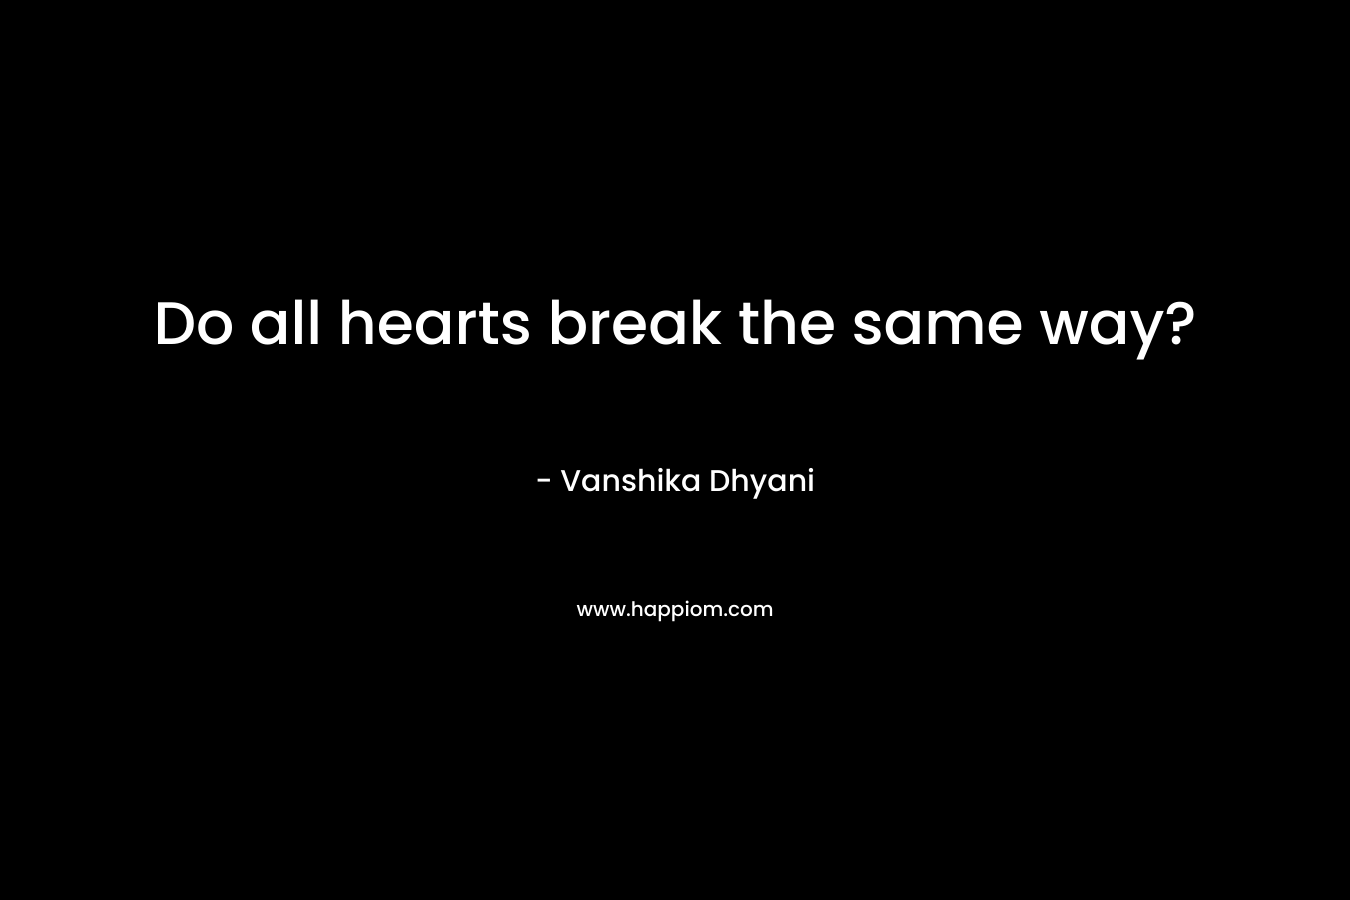 Do all hearts break the same way?